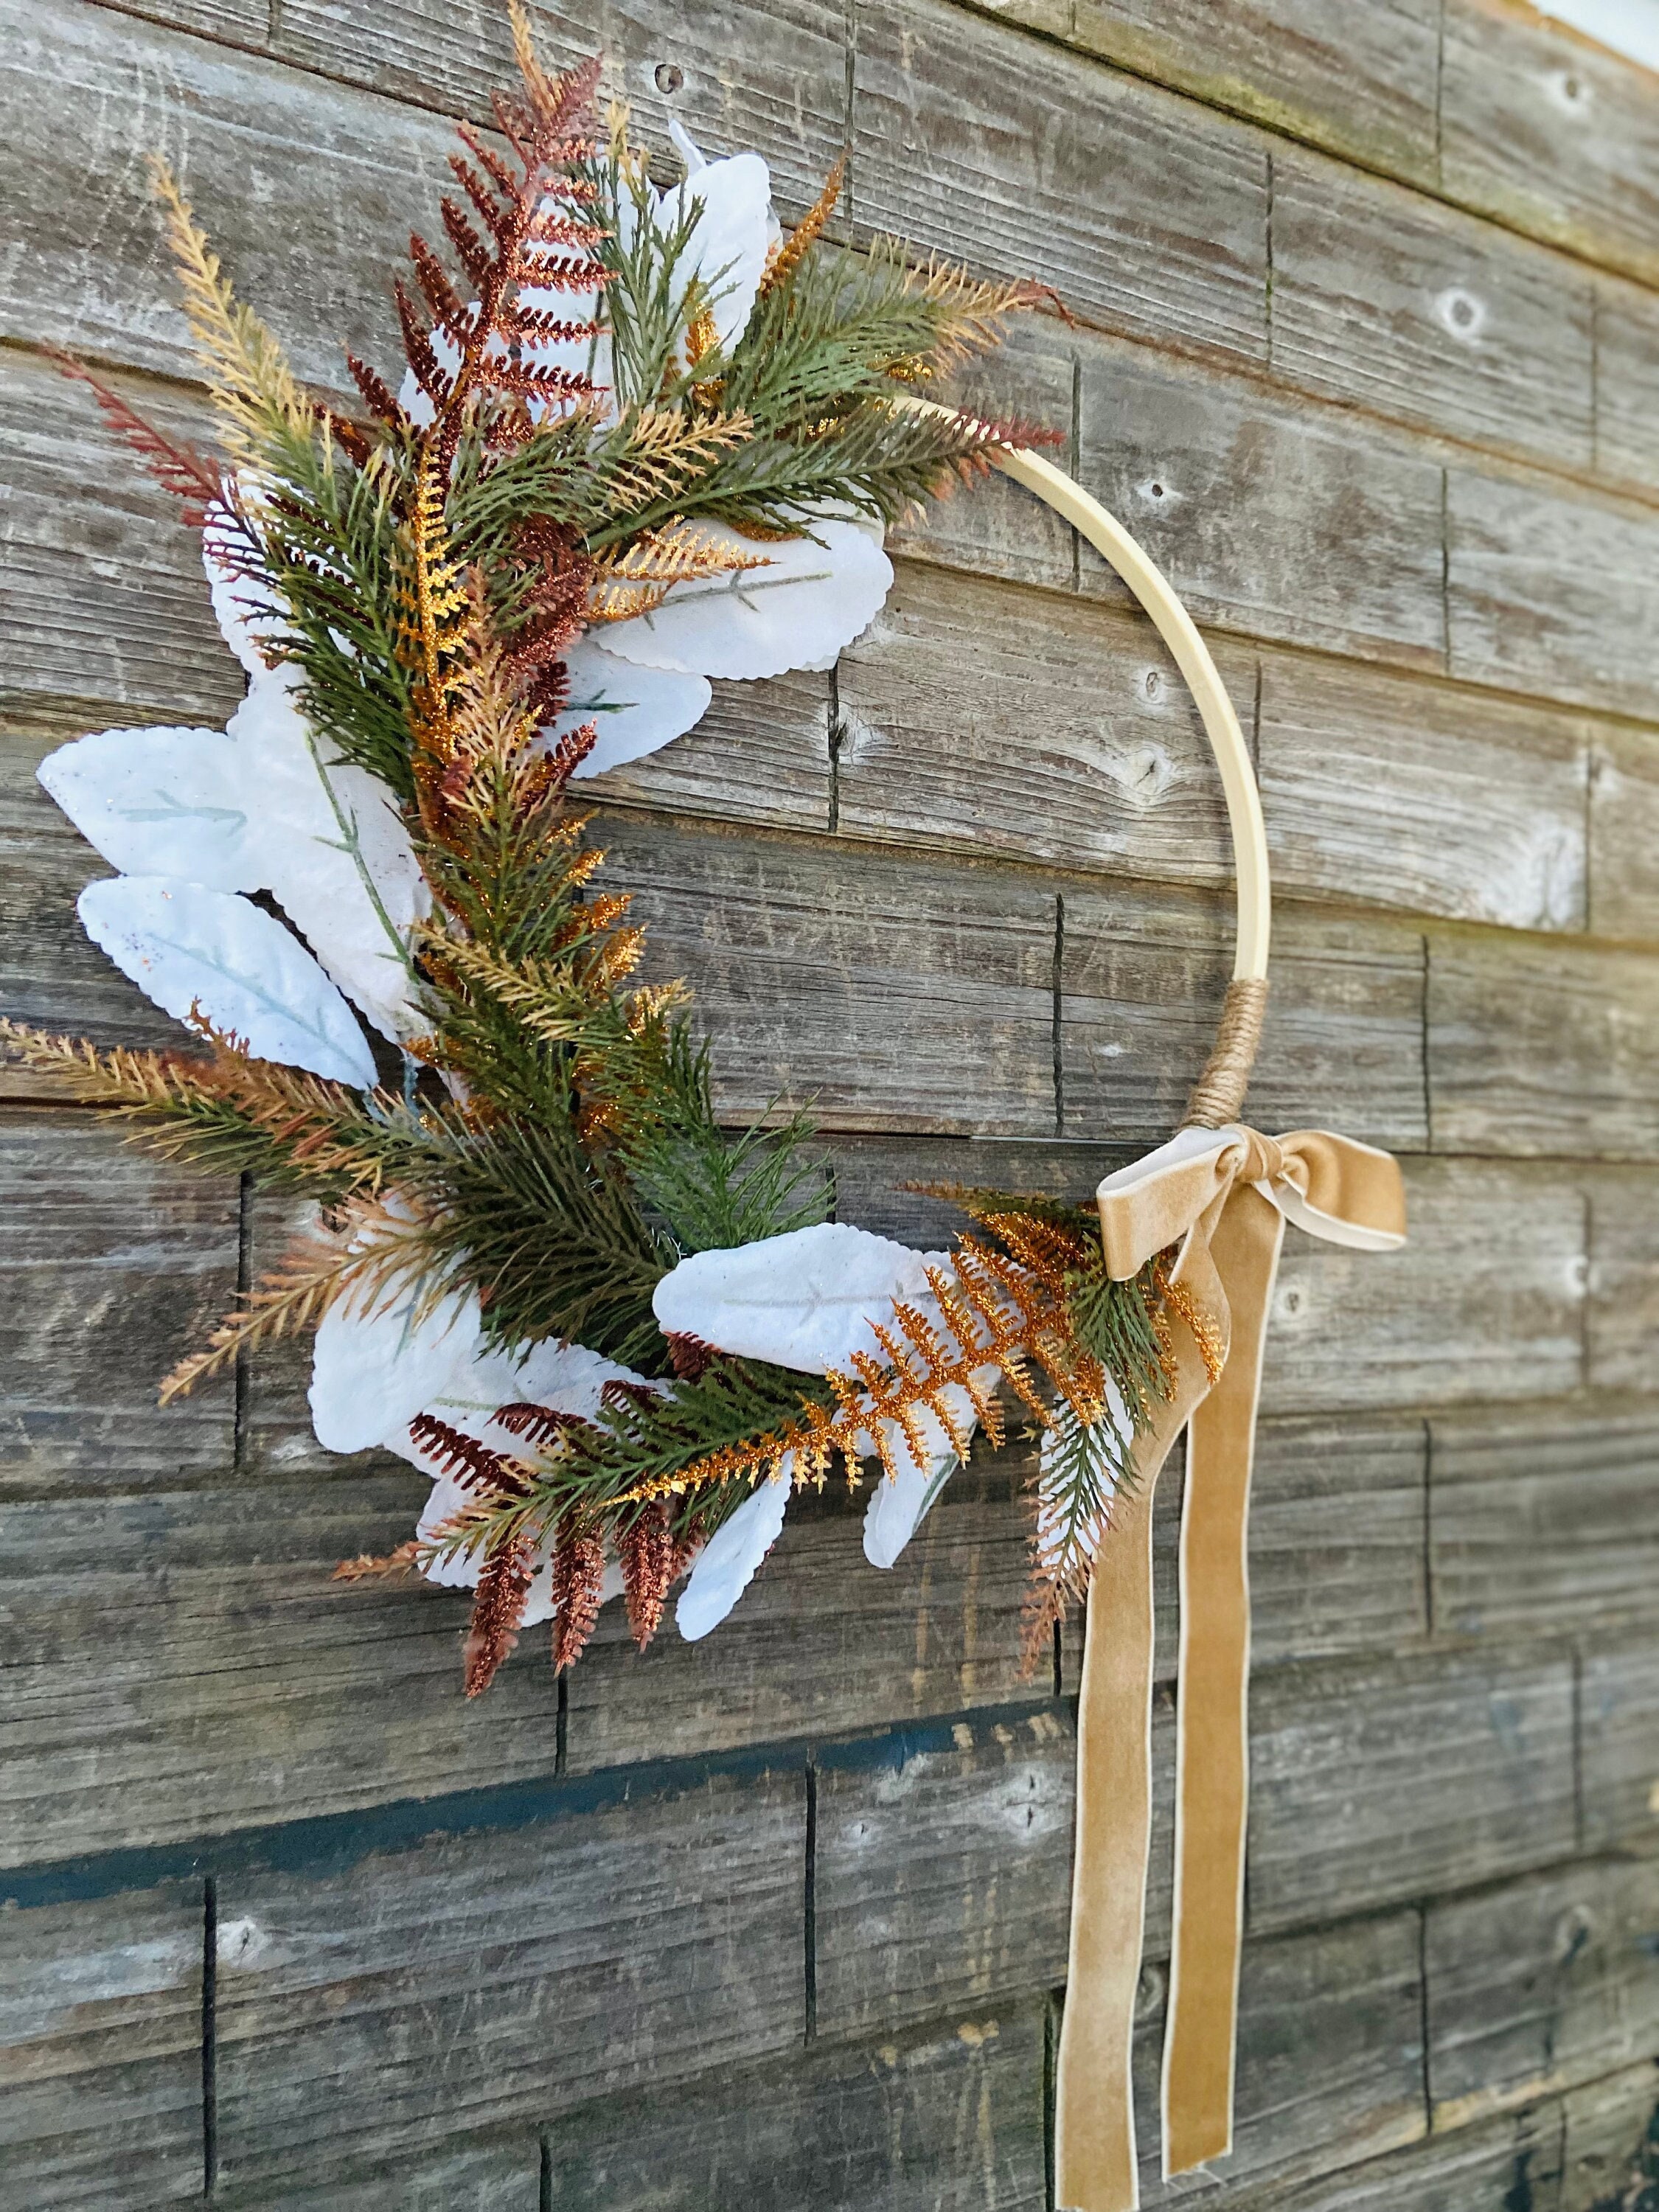 Generic Metal Floral Hoop Wreath Macrame Rings For Wall Hanging